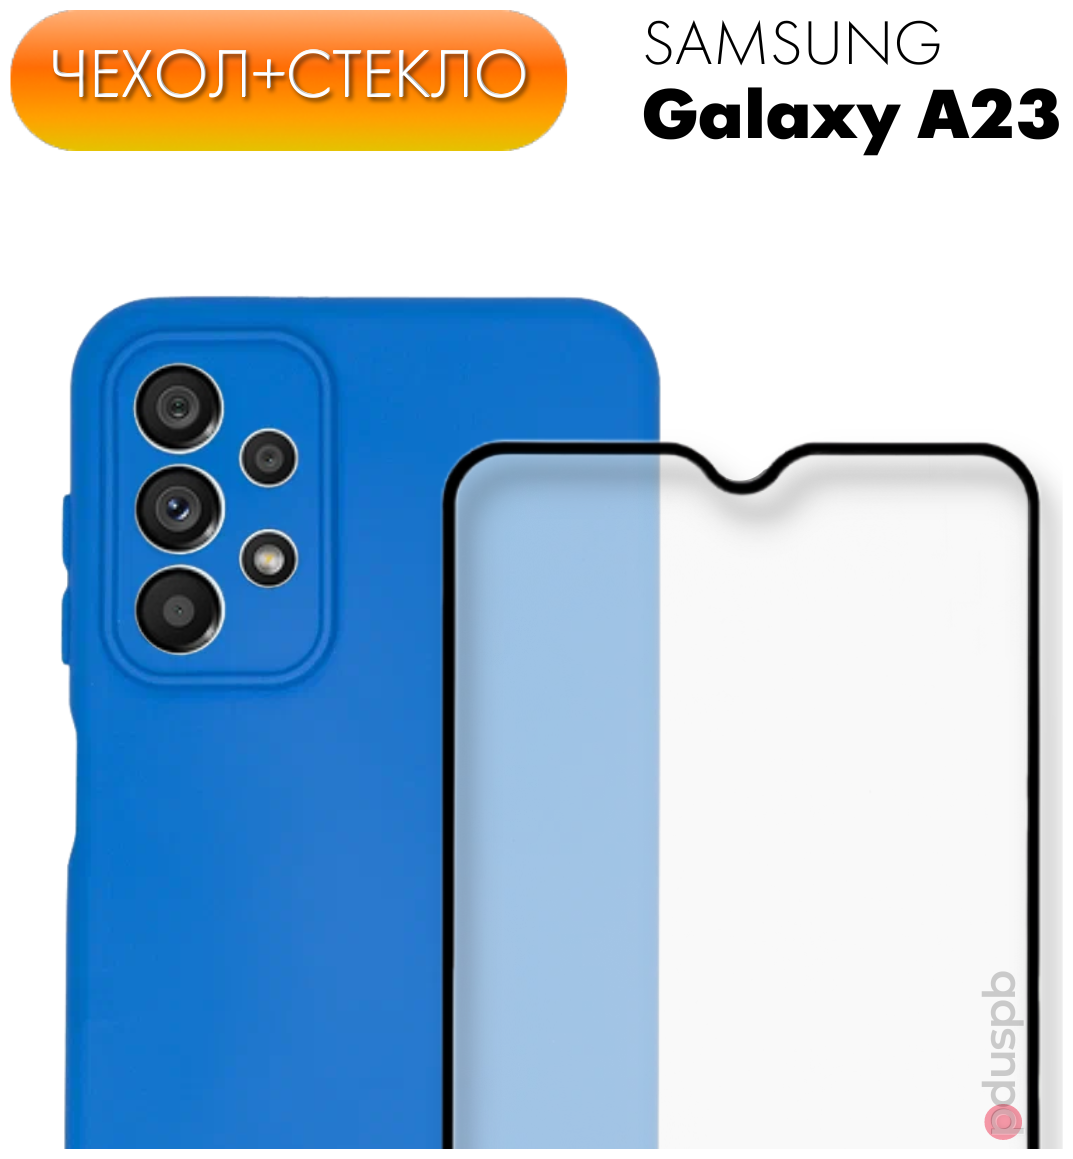 Комплект 2 в 1: Защитный матовый чехол (бампер) синий №7 Silicone Case + защитное стекло для Samsung Galaxy A23.